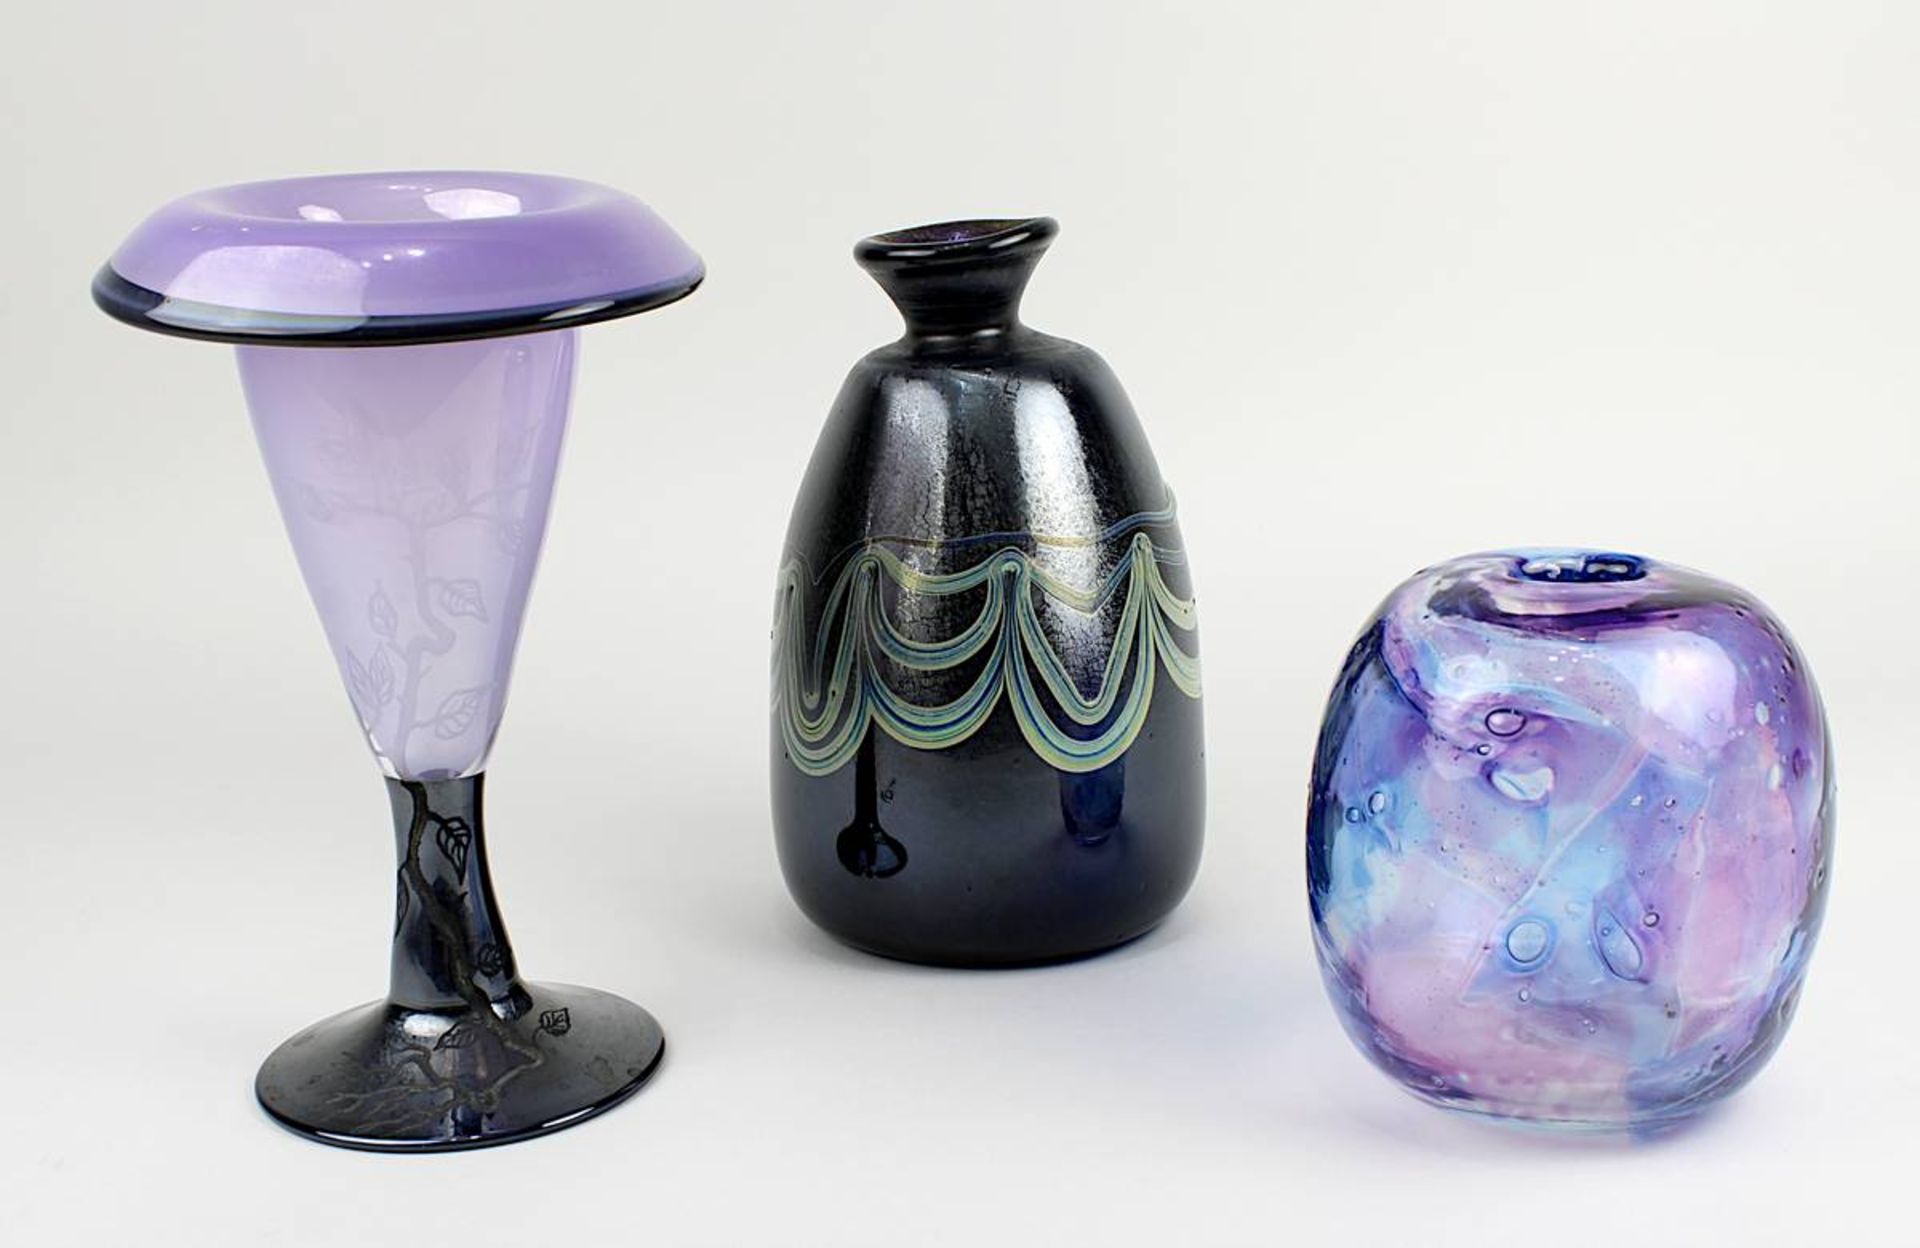 2 Vasen Eisch, Frauenau, und 1 Vase Glashaus, um 1980: 1 kelchförmige Vase in zartem Violett und